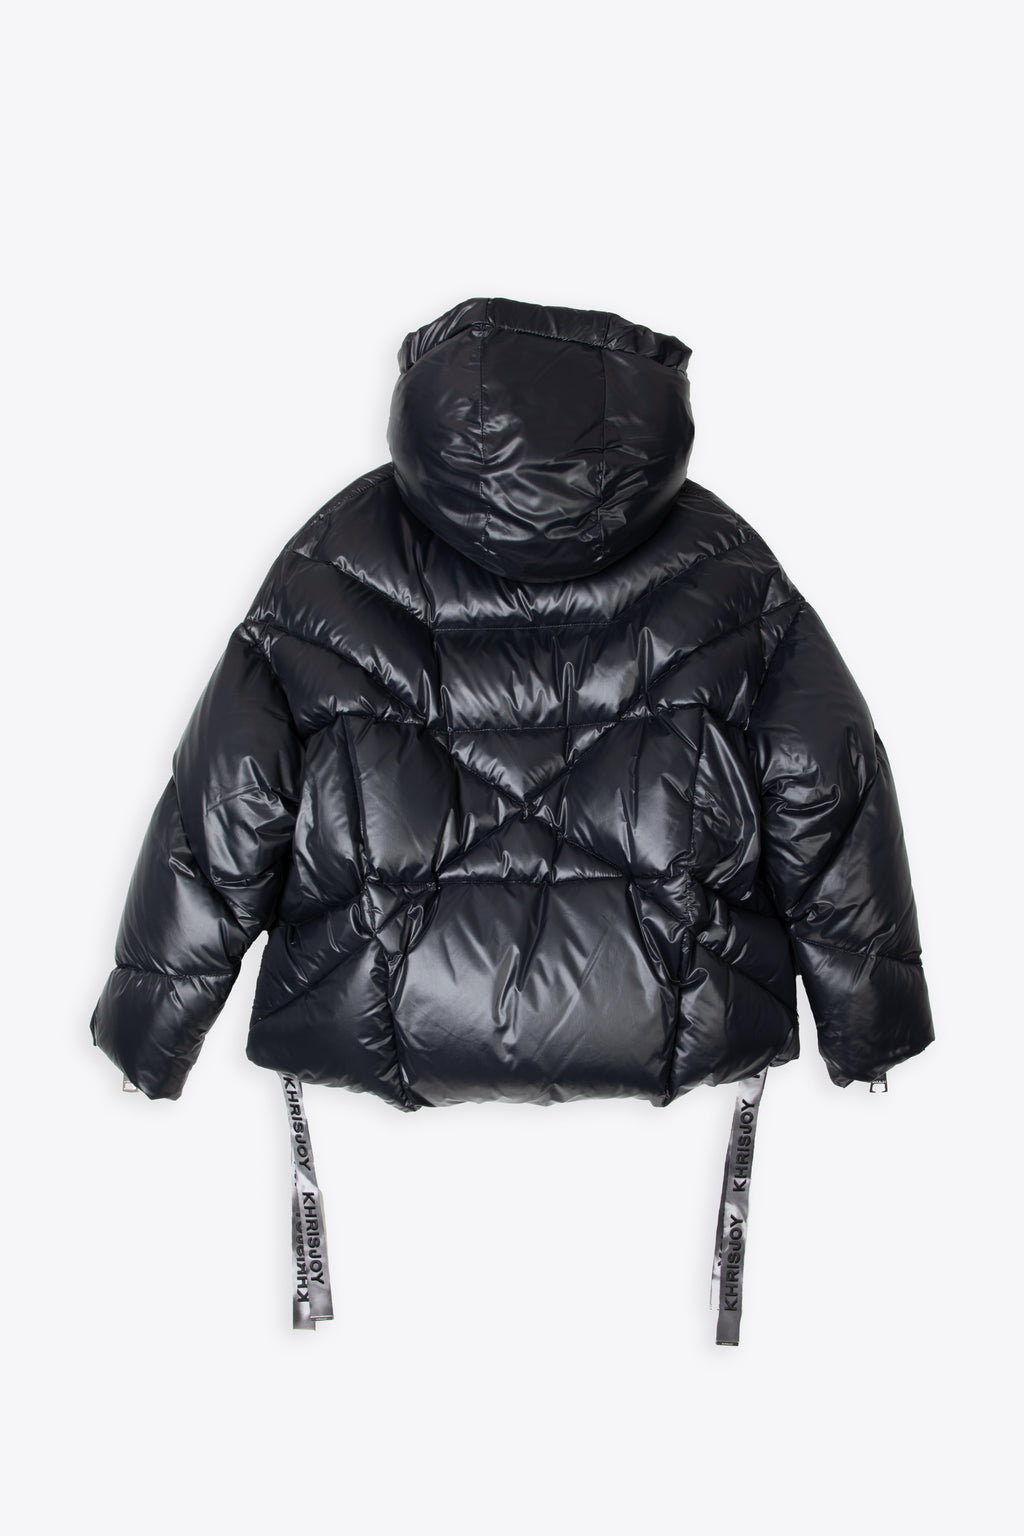 alt-image__Black-shiny-nylon-hooded-puffer-jacket---Puff-khris-iconic-shiny